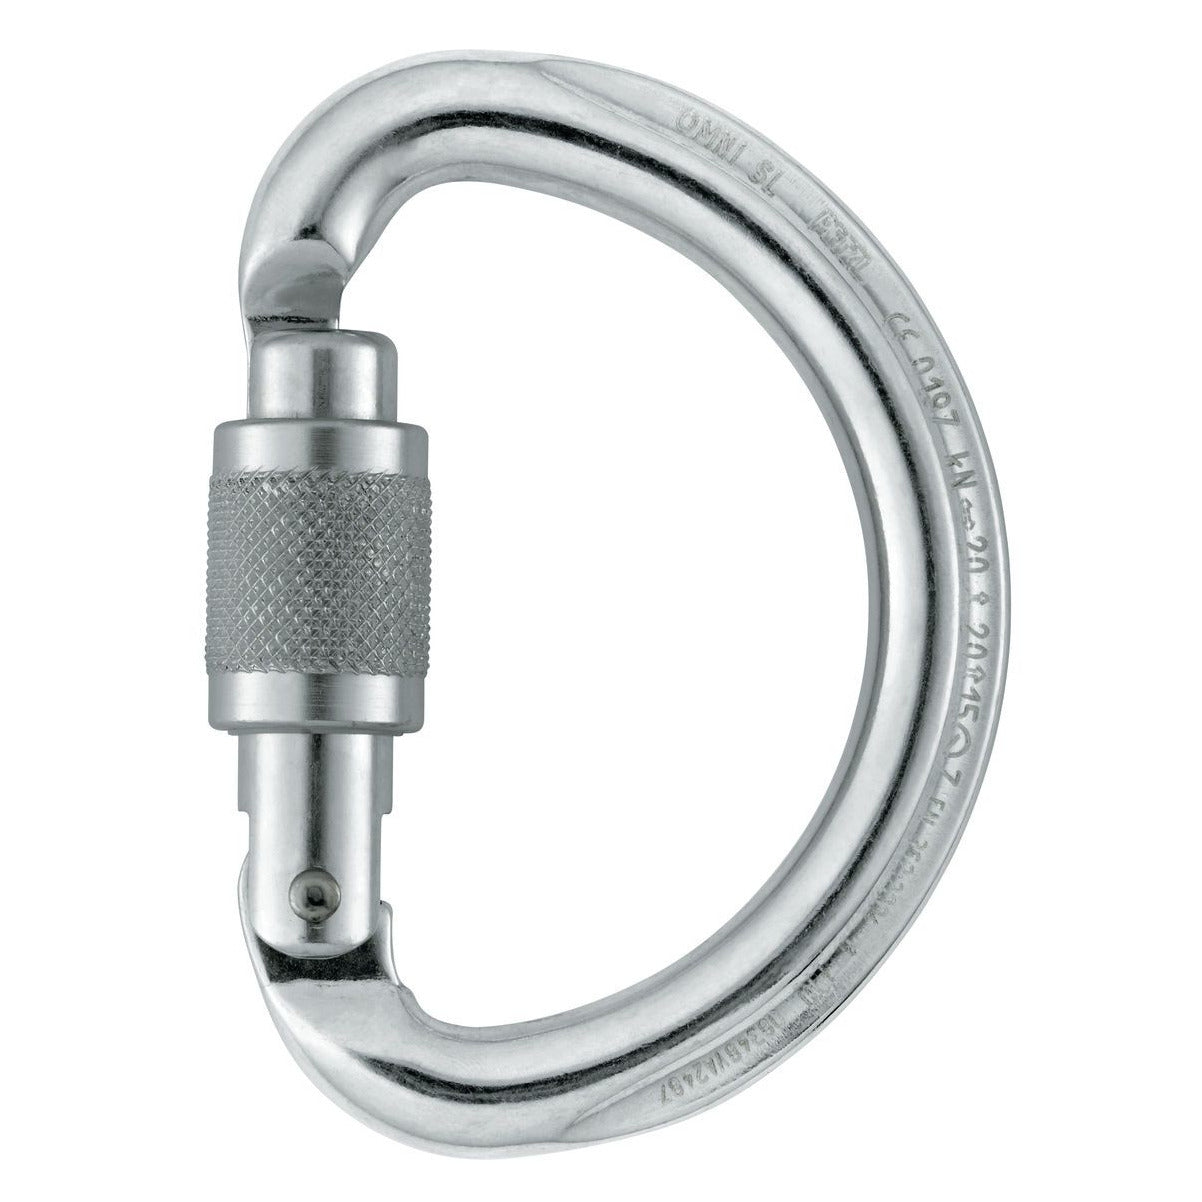 OMNI SCREW LOCK - טבעת עגולה למחצה לסגירת רתמה